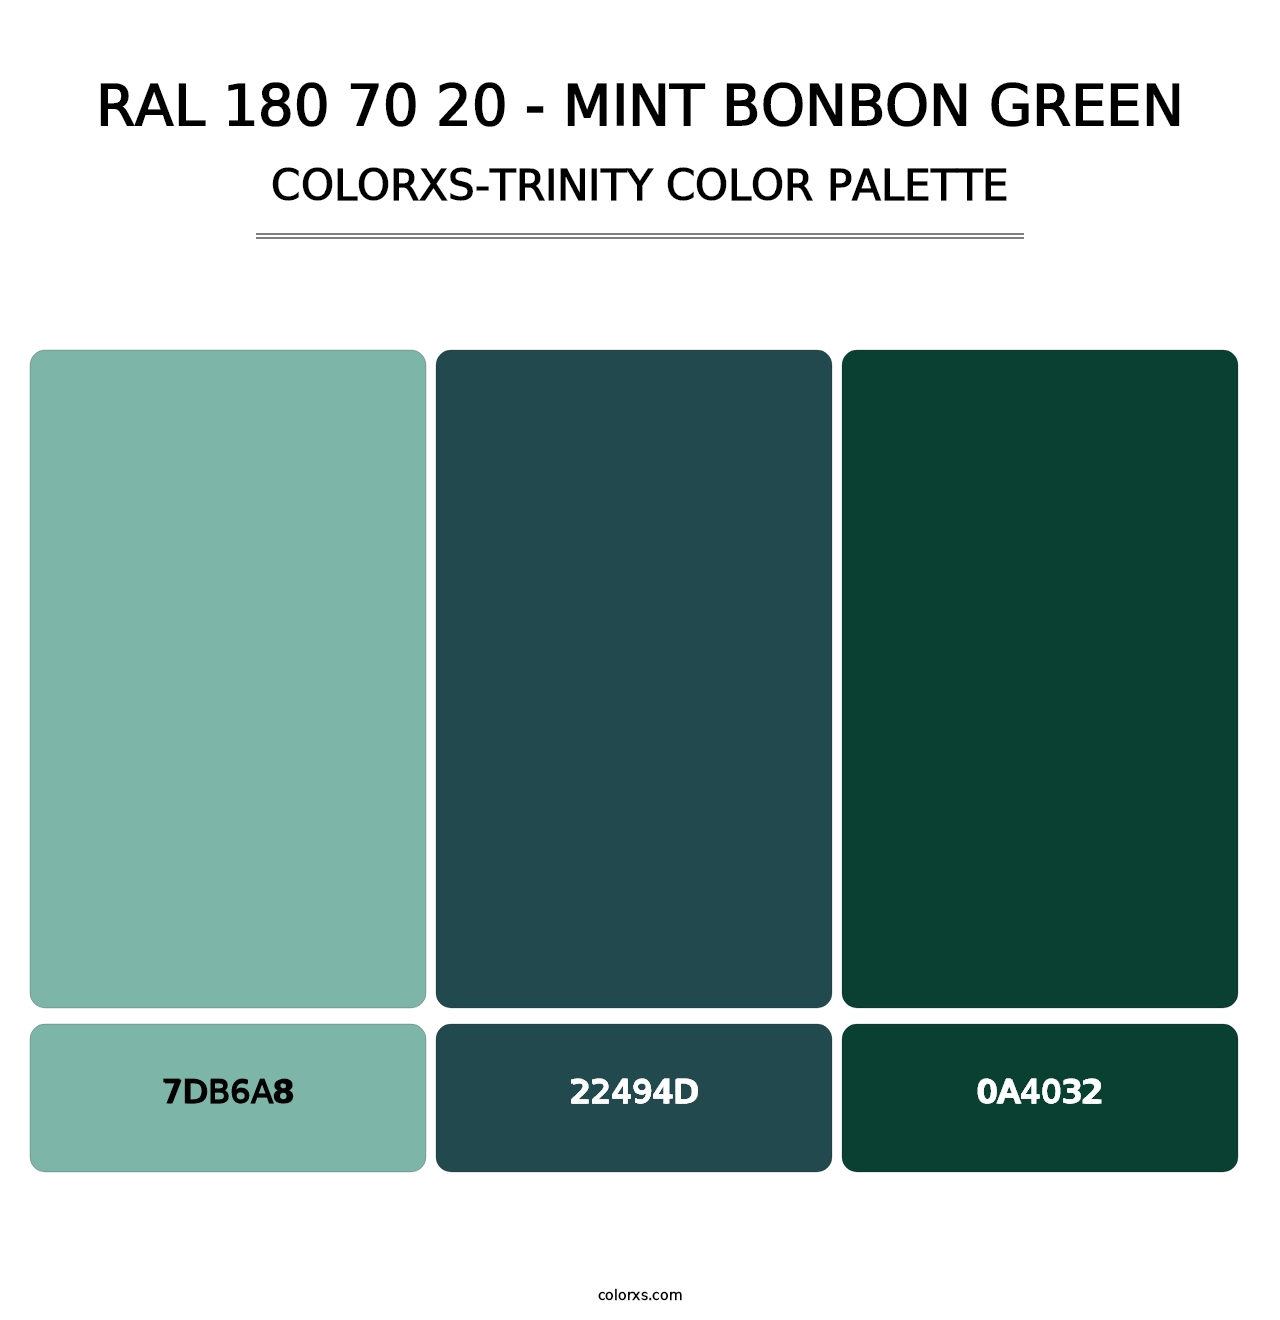 RAL 180 70 20 - Mint Bonbon Green - Colorxs Trinity Palette